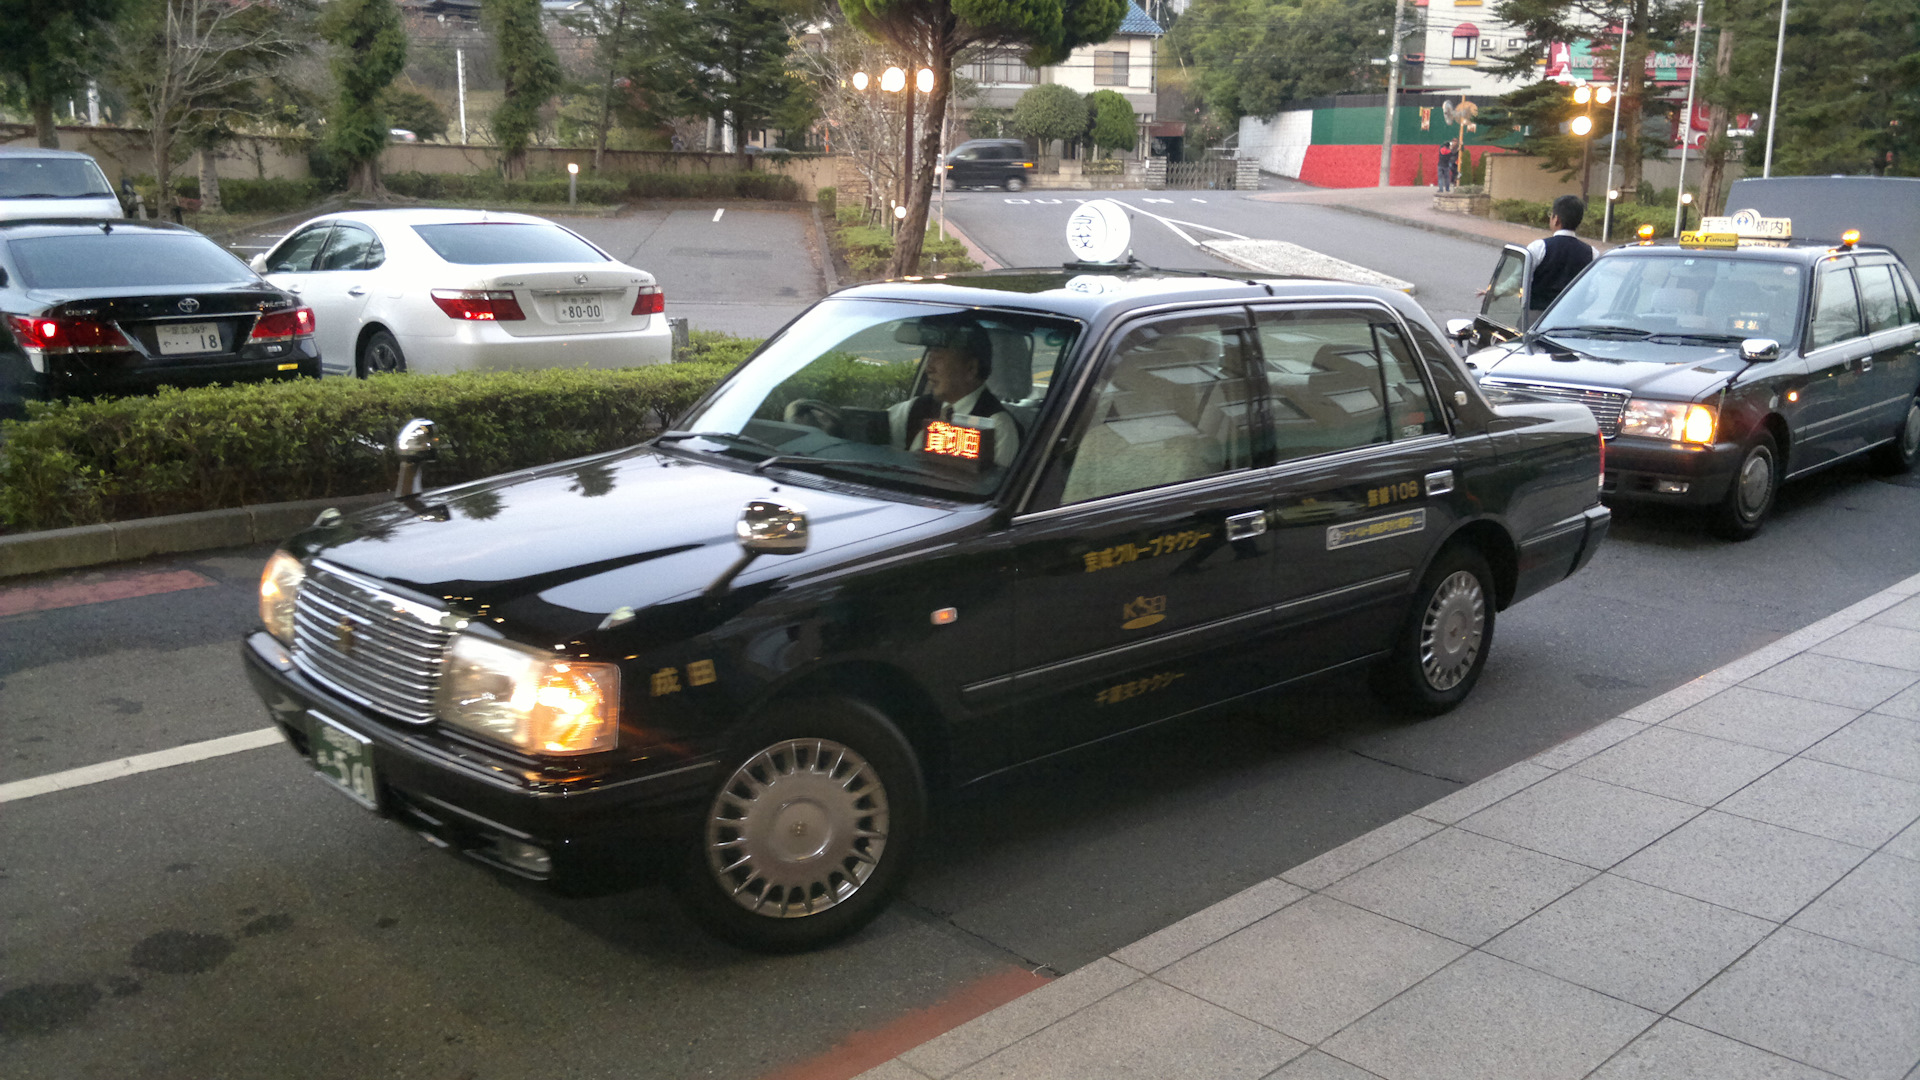 такси япония